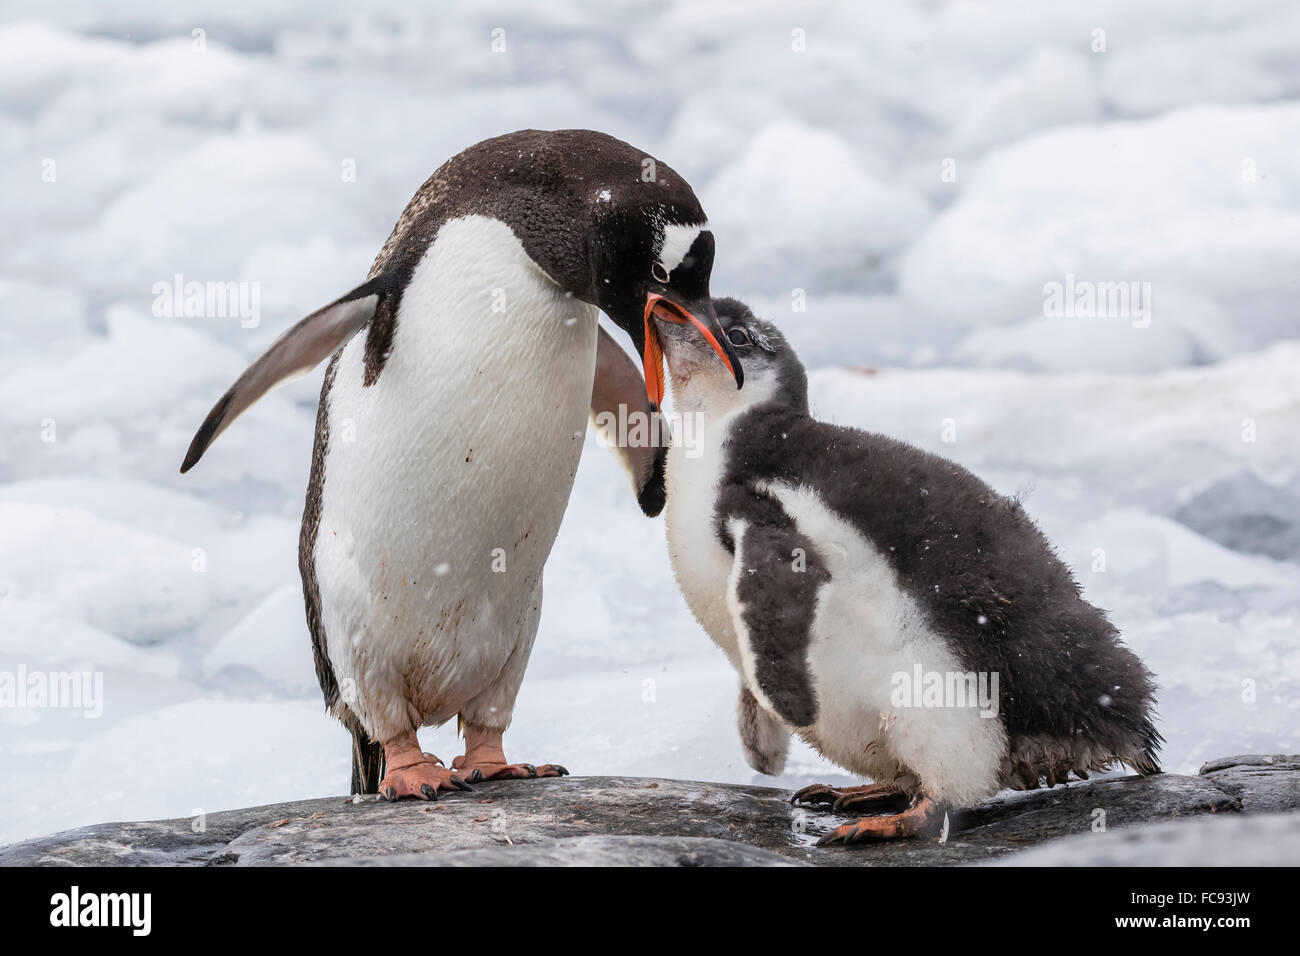 Des profils Gentoo pingouin (Pygoscelis papua) poussin d'alimentation au point de l'Île Wiencke, Jougla, Antarctique, les régions polaires Banque D'Images